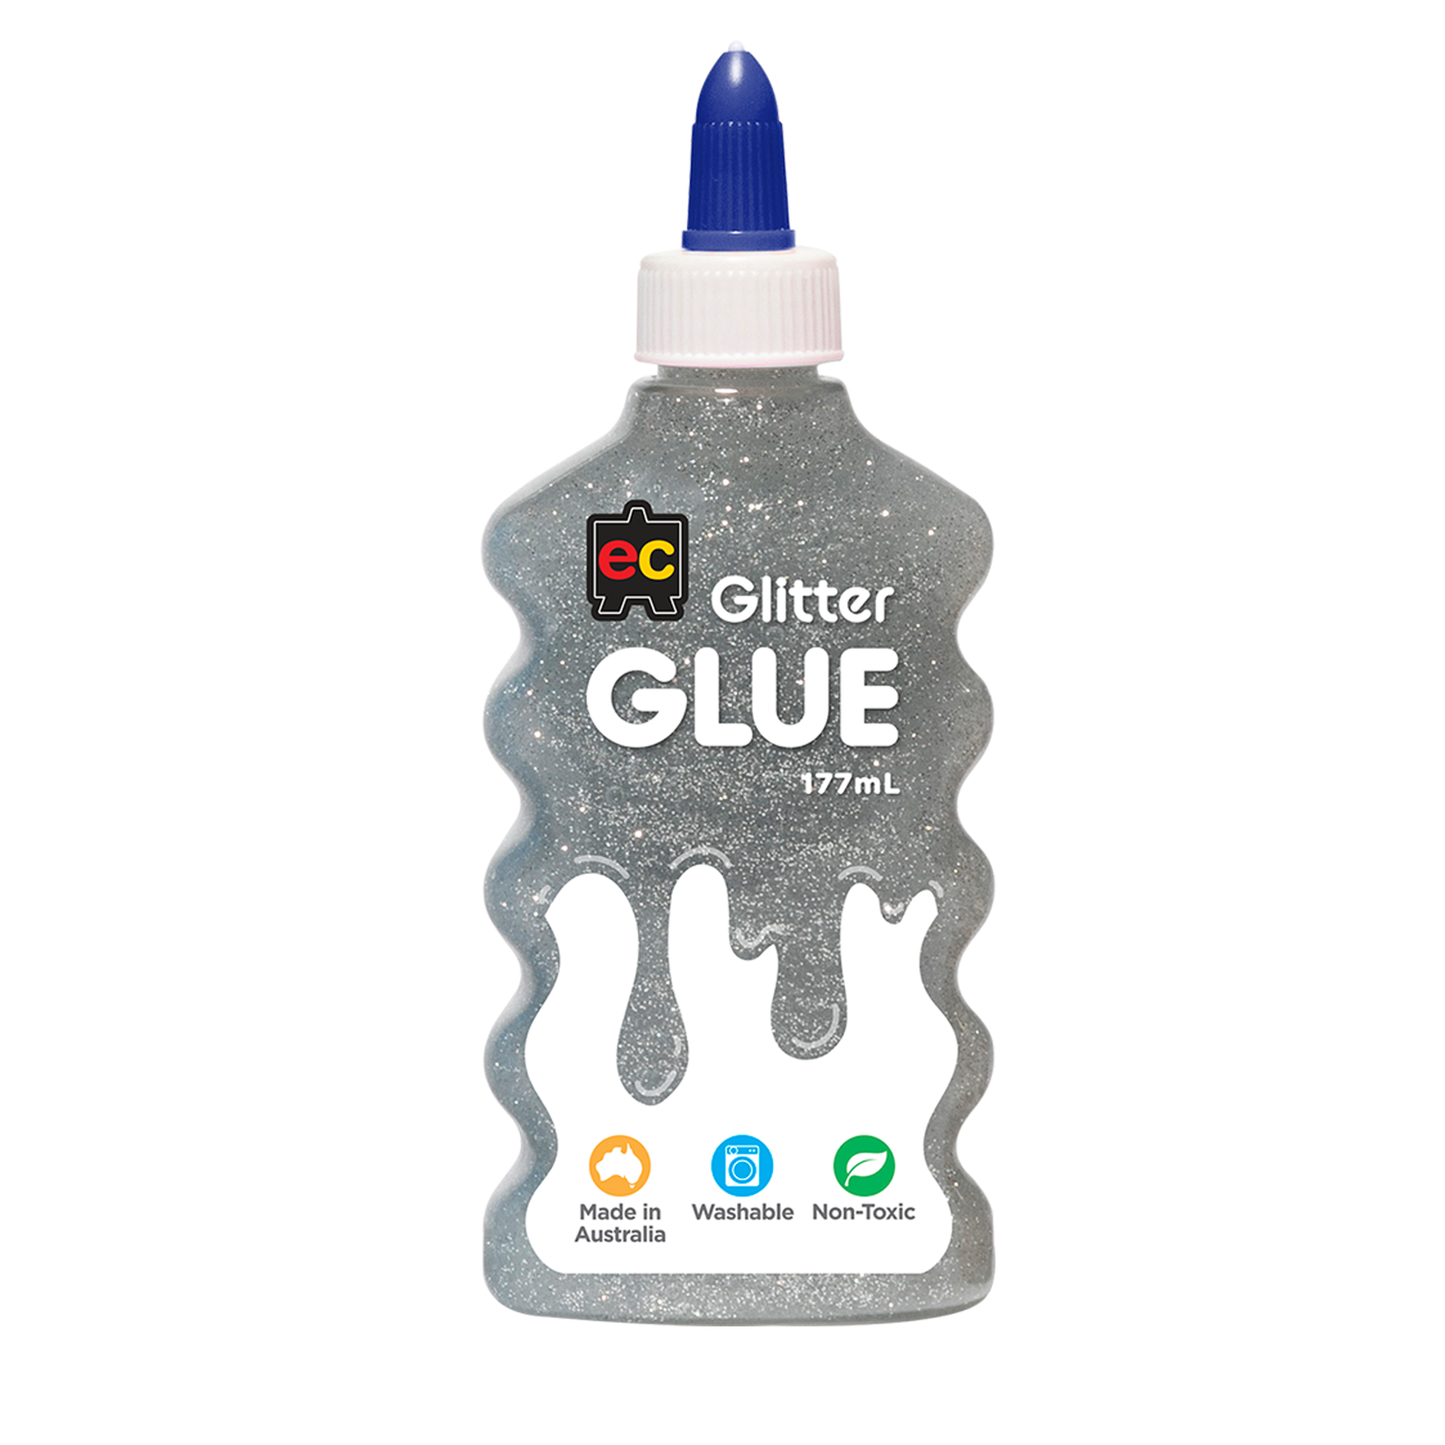 EC Glitter Glue 177ml Silver